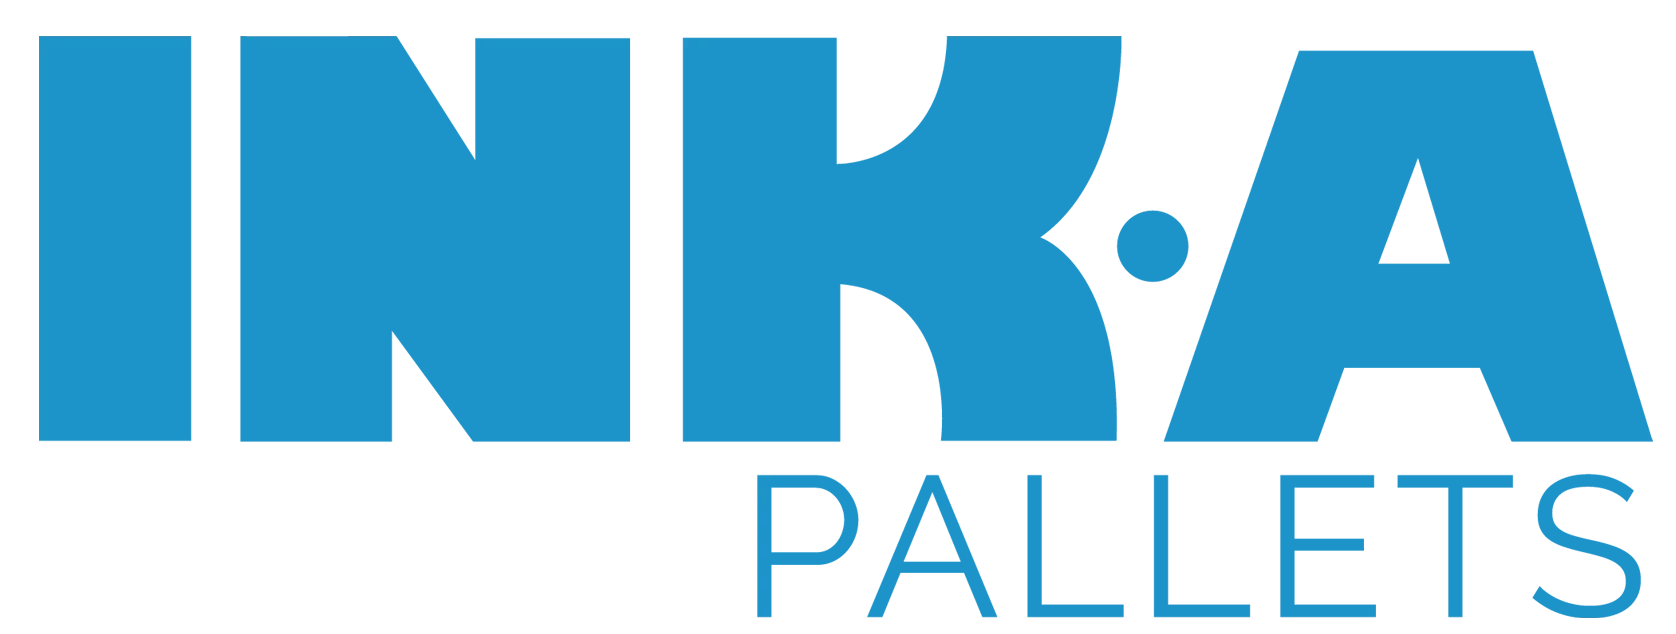 logo inka pallets